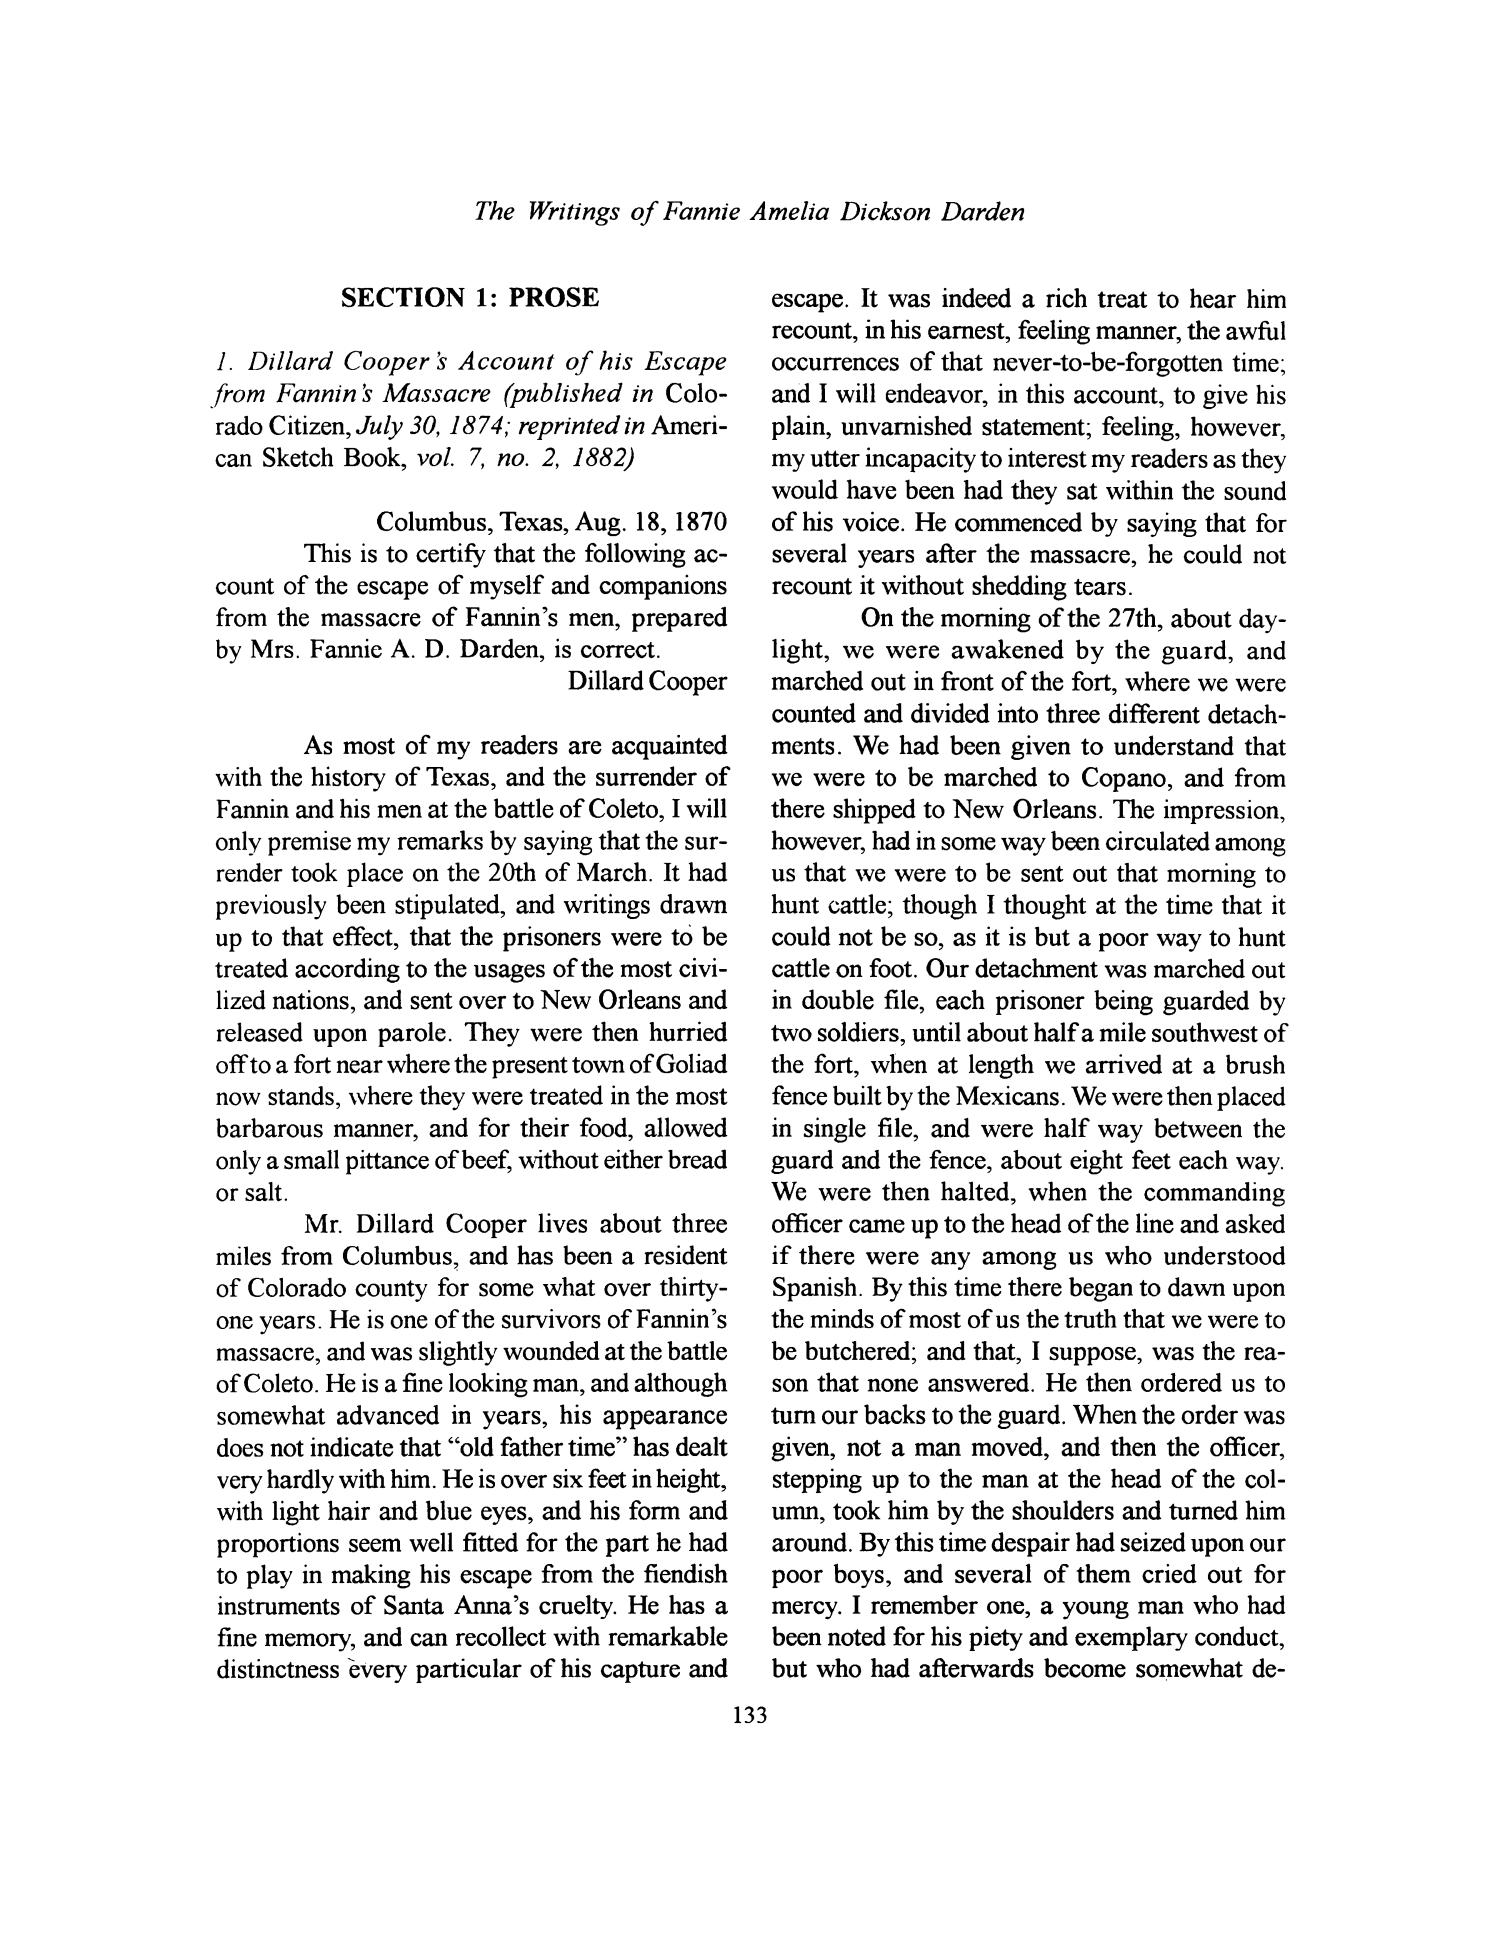 Nesbitt Memorial Library Journal, Volume 9, Number 3, September 1999
                                                
                                                    133
                                                